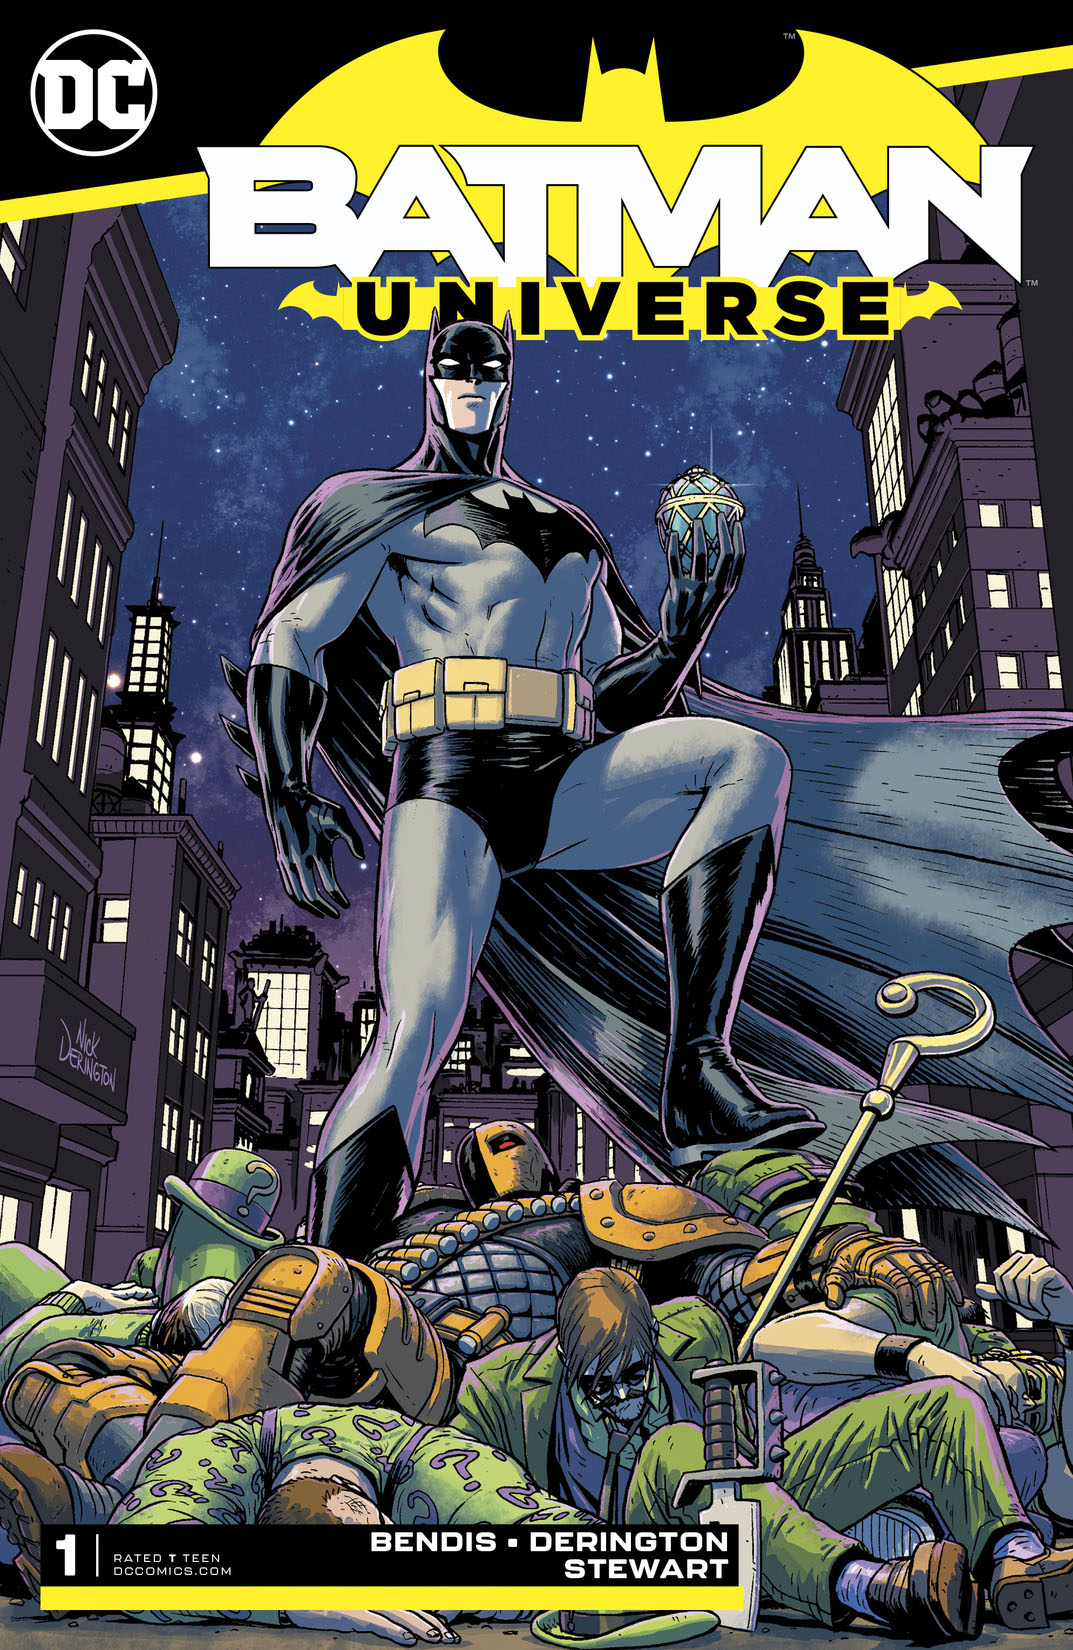 Batman: Universe #1 preview images